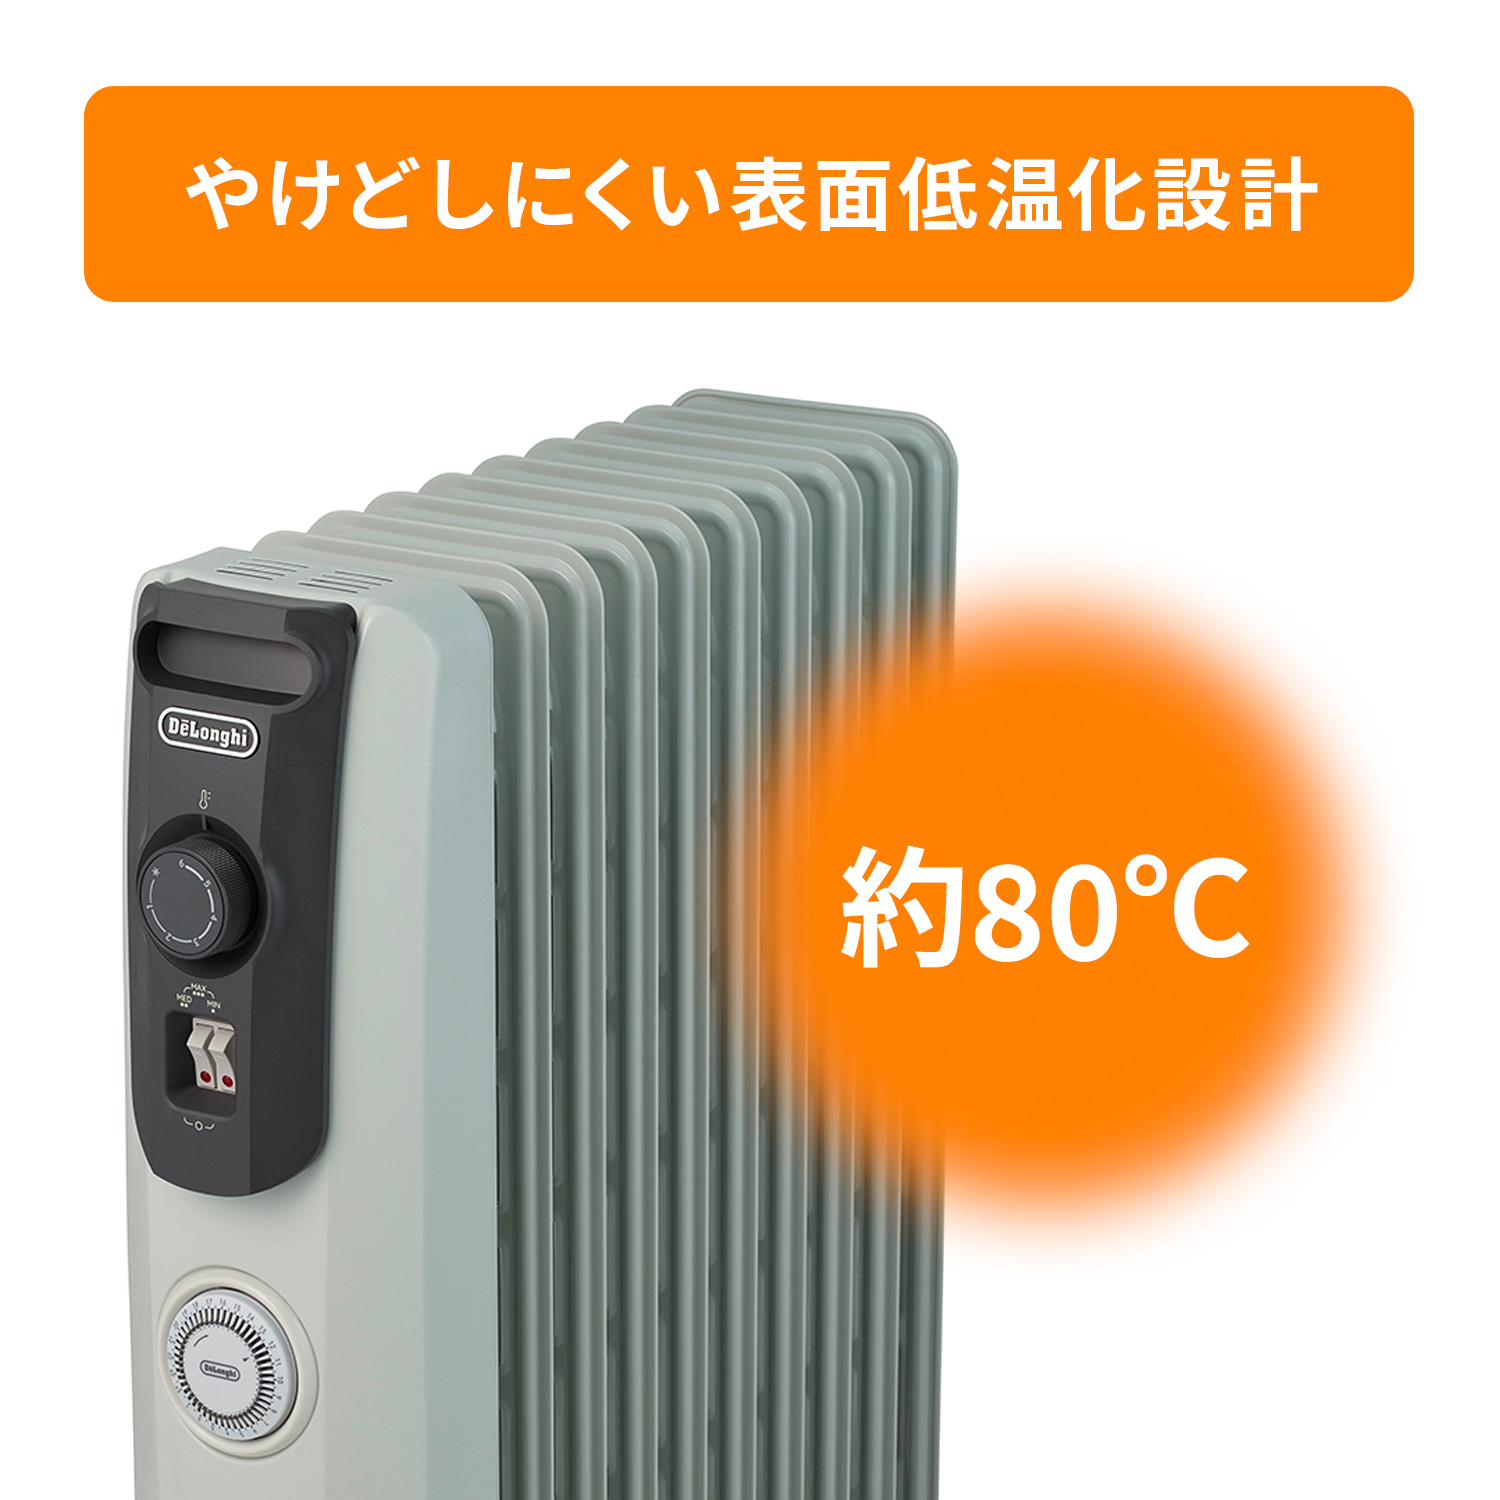 冷暖房/空調 オイルヒーター デロンギ オイルヒーター RHJ10F1015-DG |ゼロ風暖房 デロンギ ヒーター